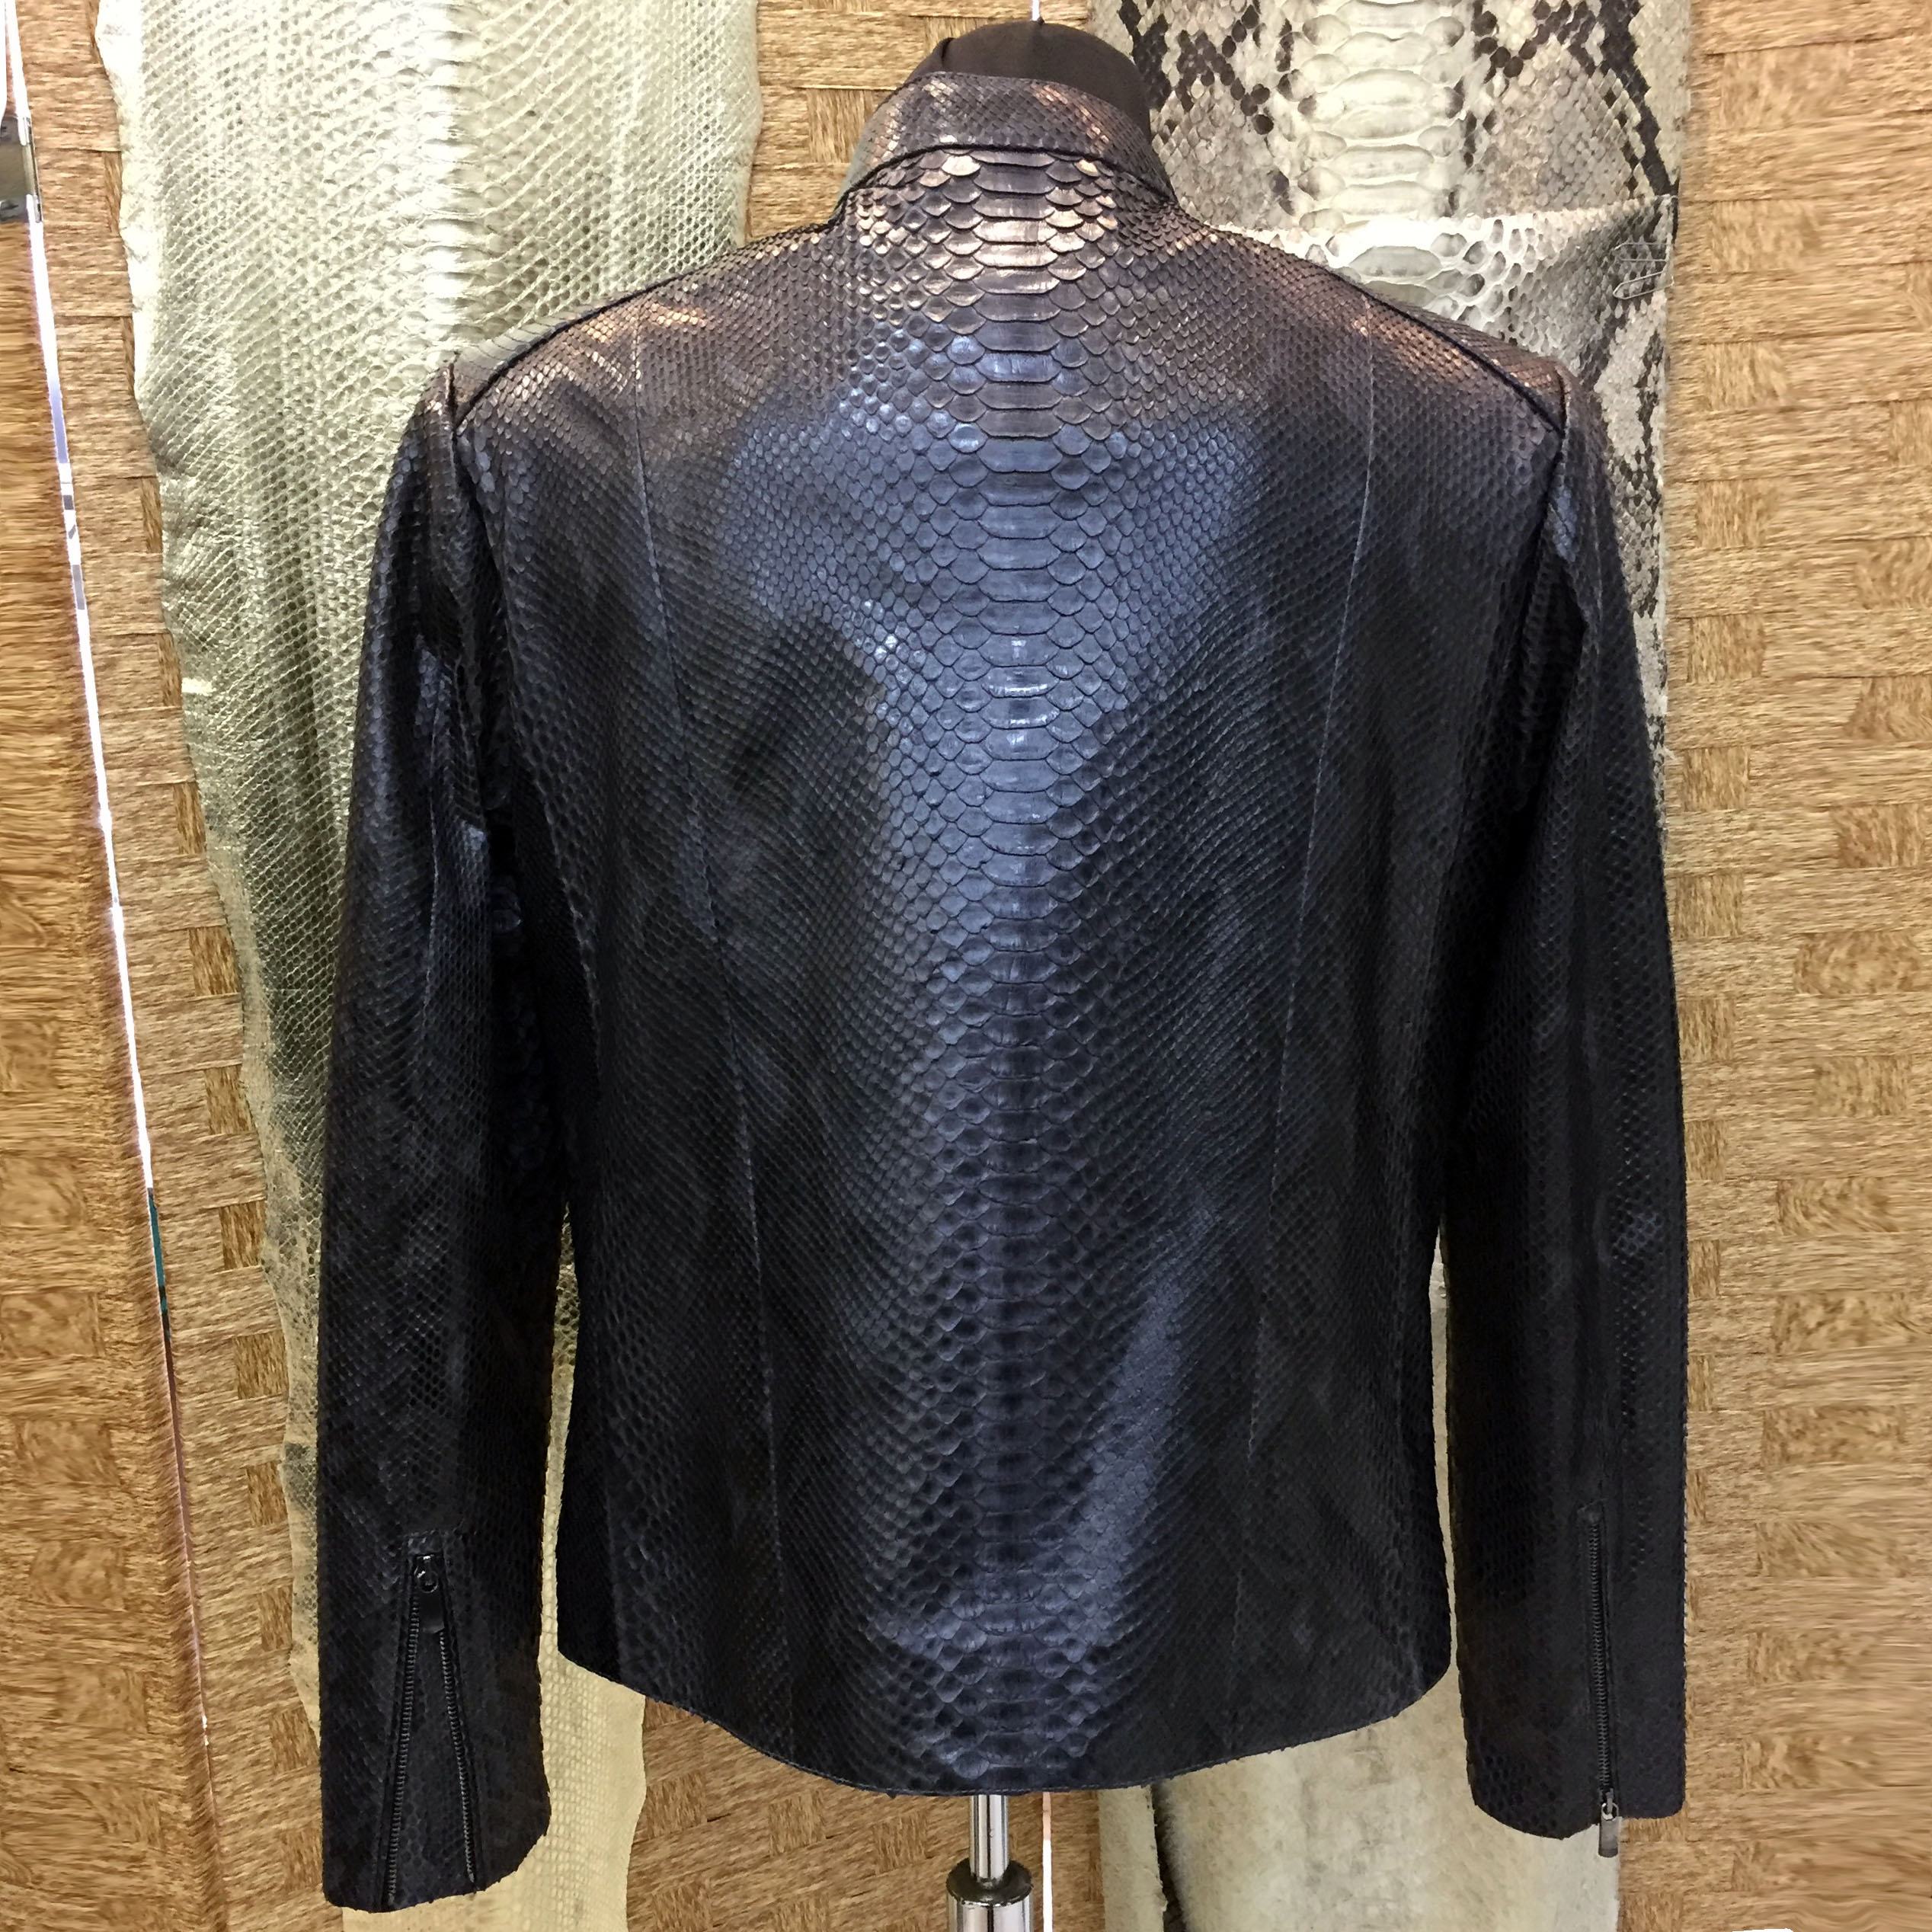 Mens Snake Leather Jacket - Leather Guys: Luxury Leather jackets